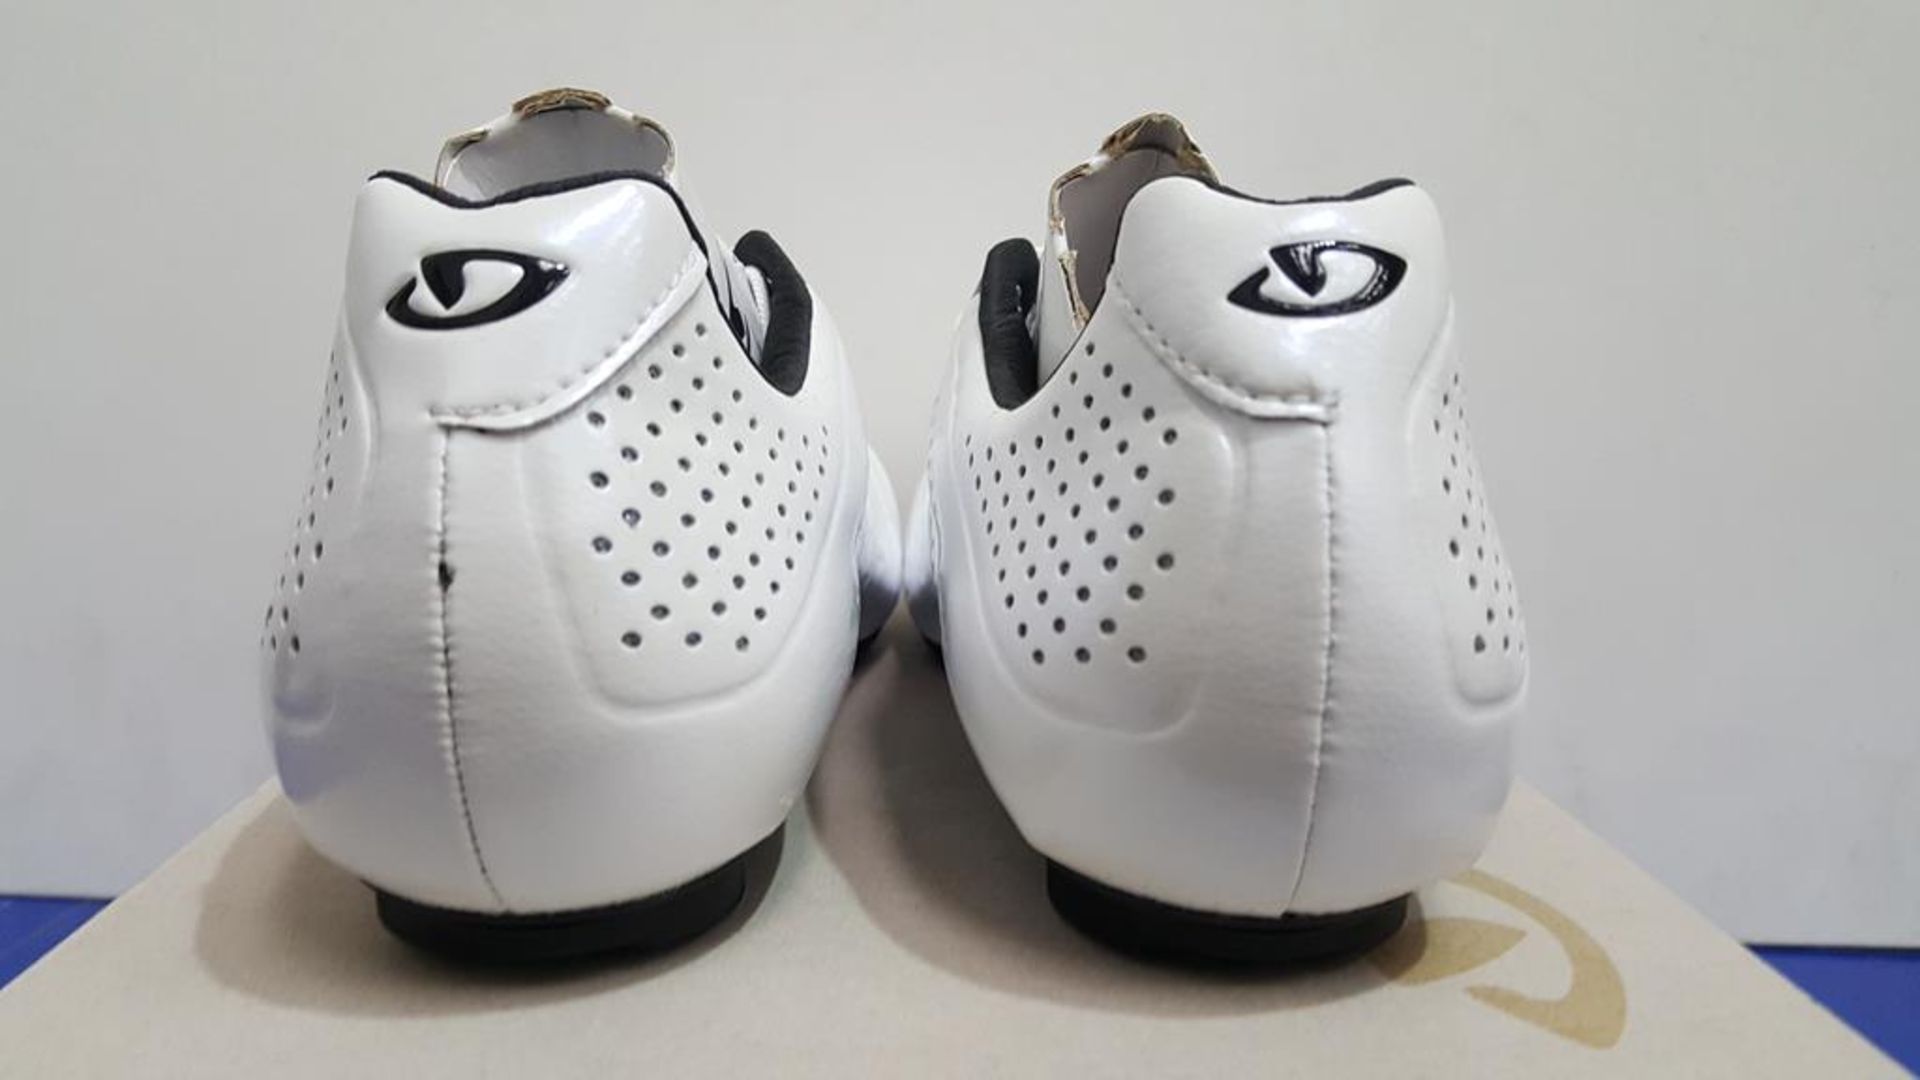 Giro Empire SLX UK Size 7 Cycling Shoes - Image 3 of 3